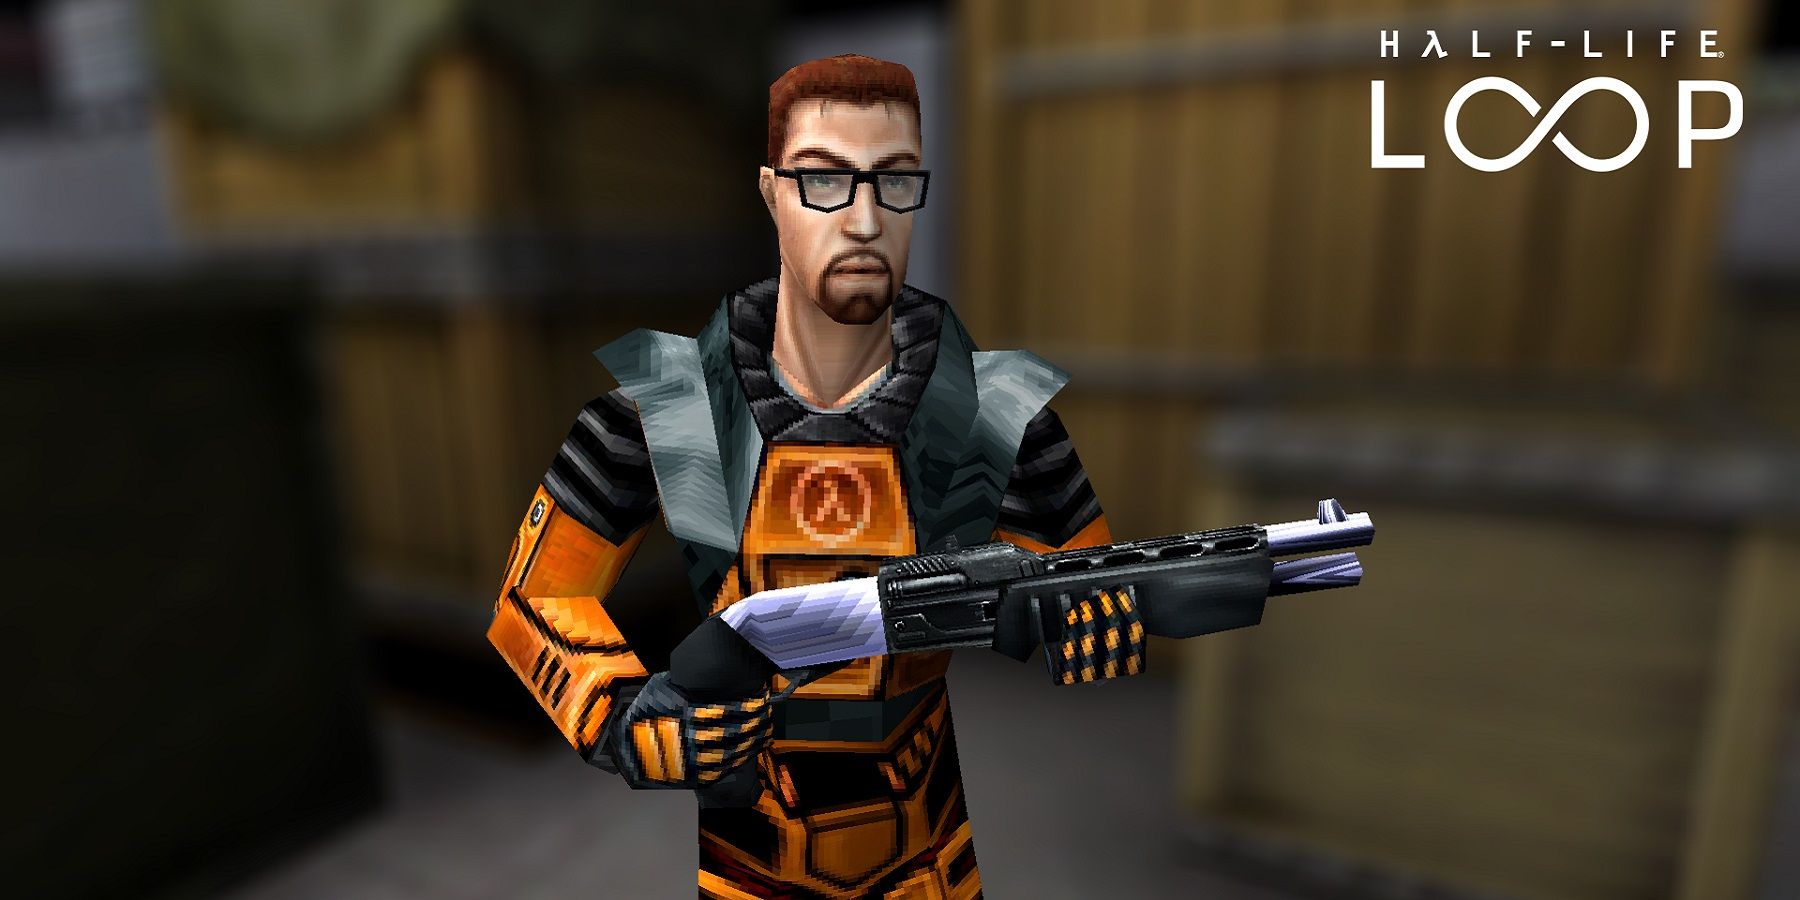 Half-Life Remake for PS5 (fan made design) : r/HalfLife